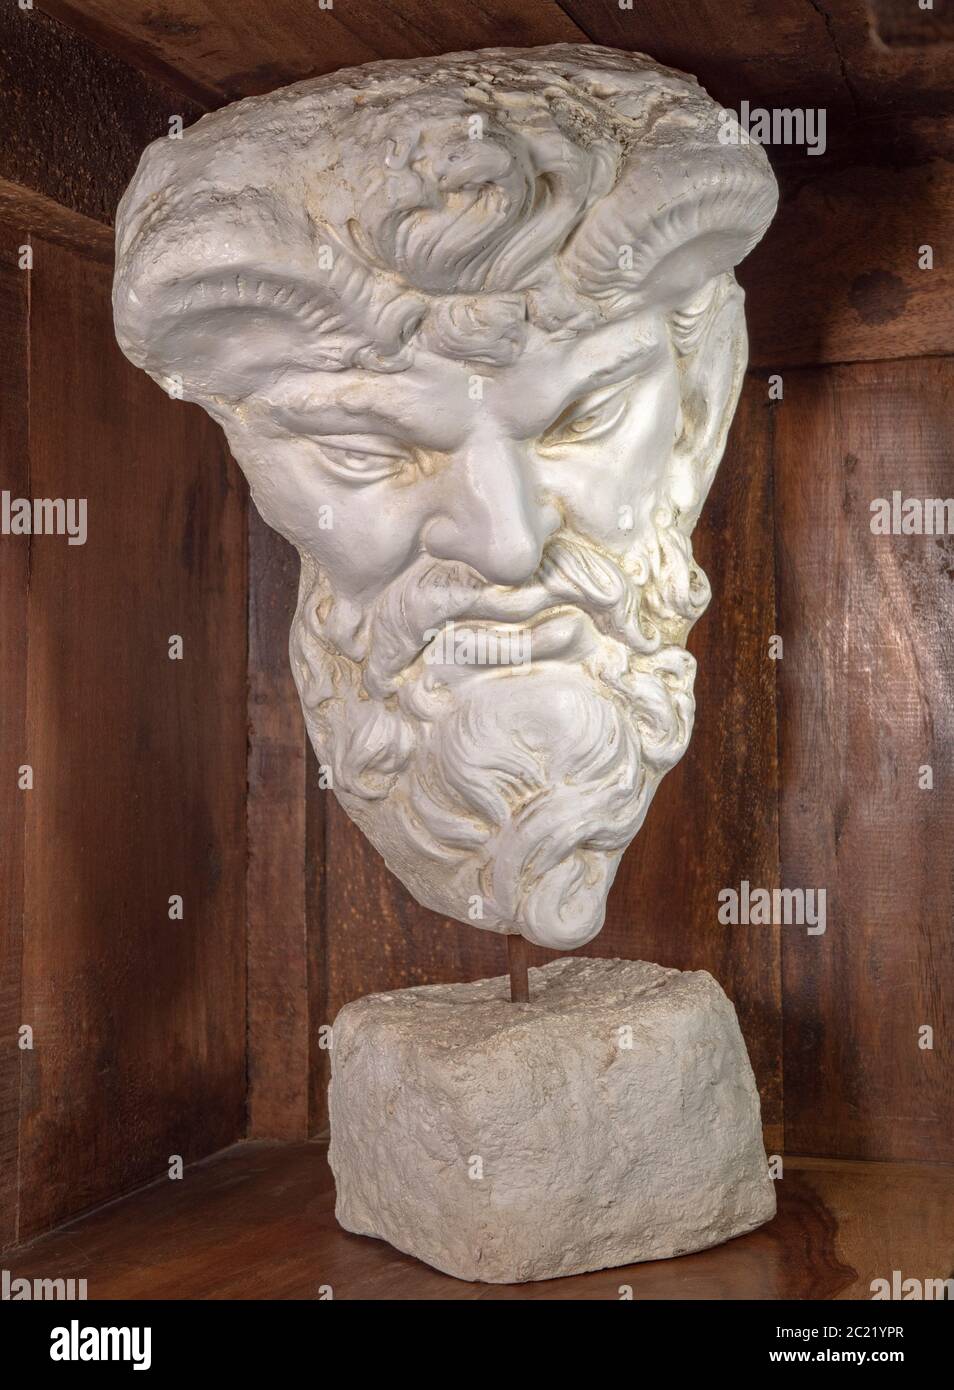 Un buste en plâtre blanc de Zeus – un ancien dieu grec – sur une étagère dans un ancien cabinet en bois. Banque D'Images